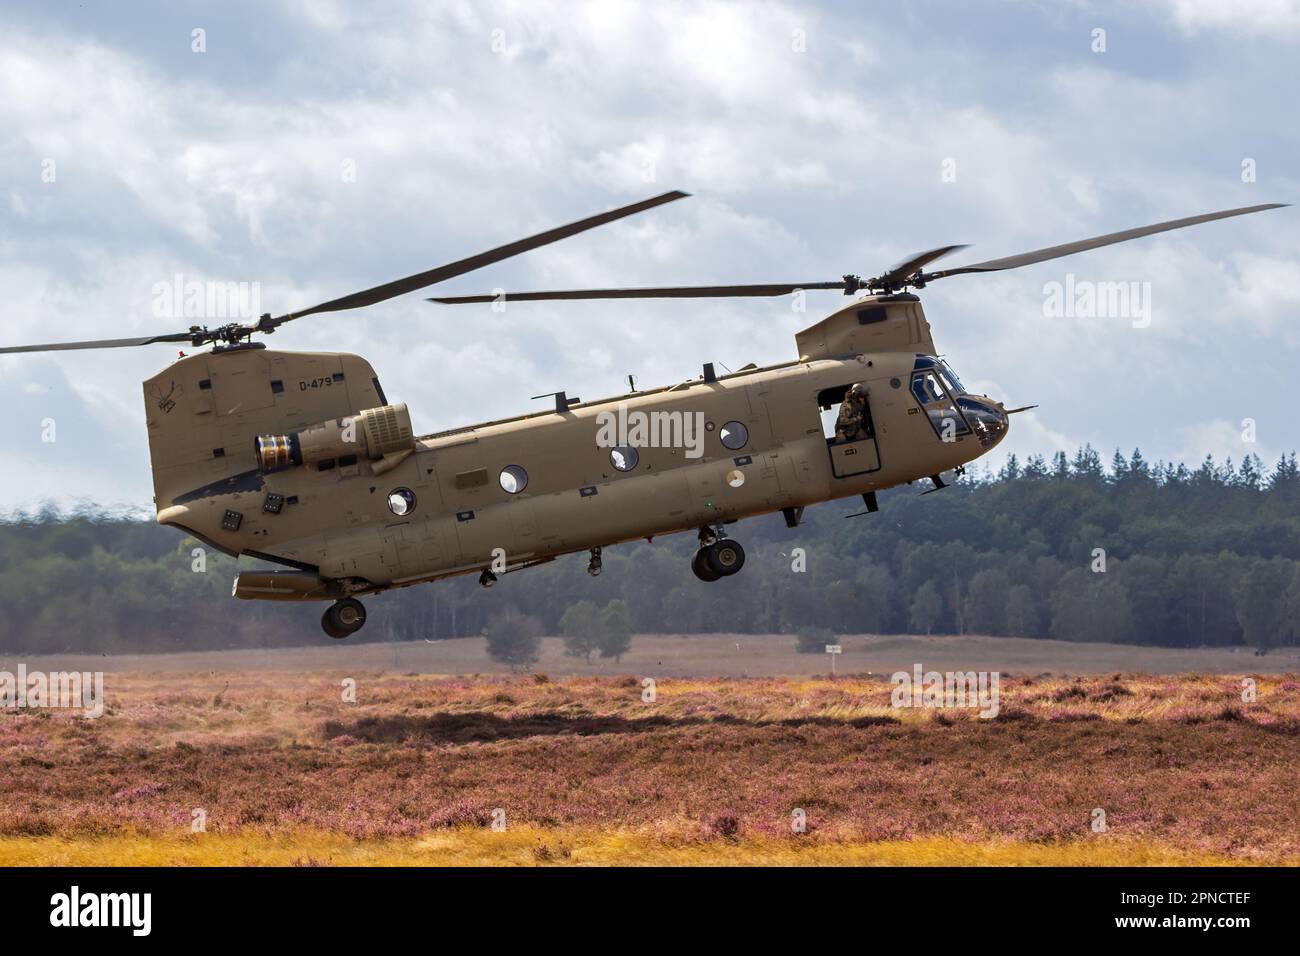 Hélicoptère Boeing CH-47F Chinook arrivant dans une zone d'atterrissage. Ginkelse Heide, pays-Bas - 17 septembre 2022 Banque D'Images